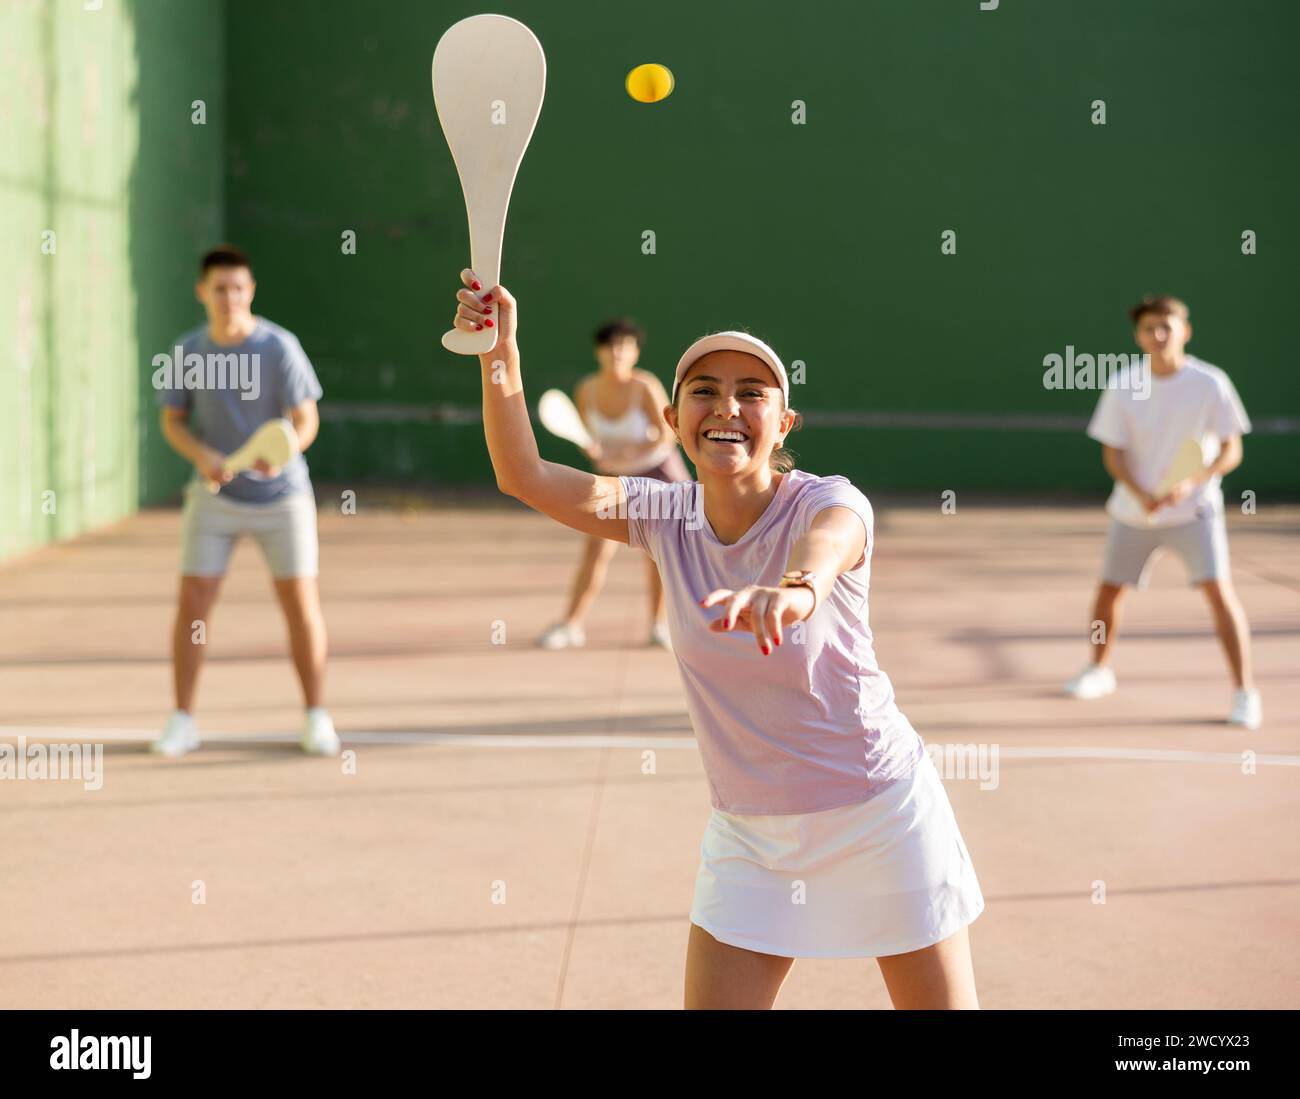 Portrait d'une fille sportive jouant paleta fronton sur un terrain extérieur, prêt à frapper le ballon. Concept de mode de vie sain et actif Banque D'Images